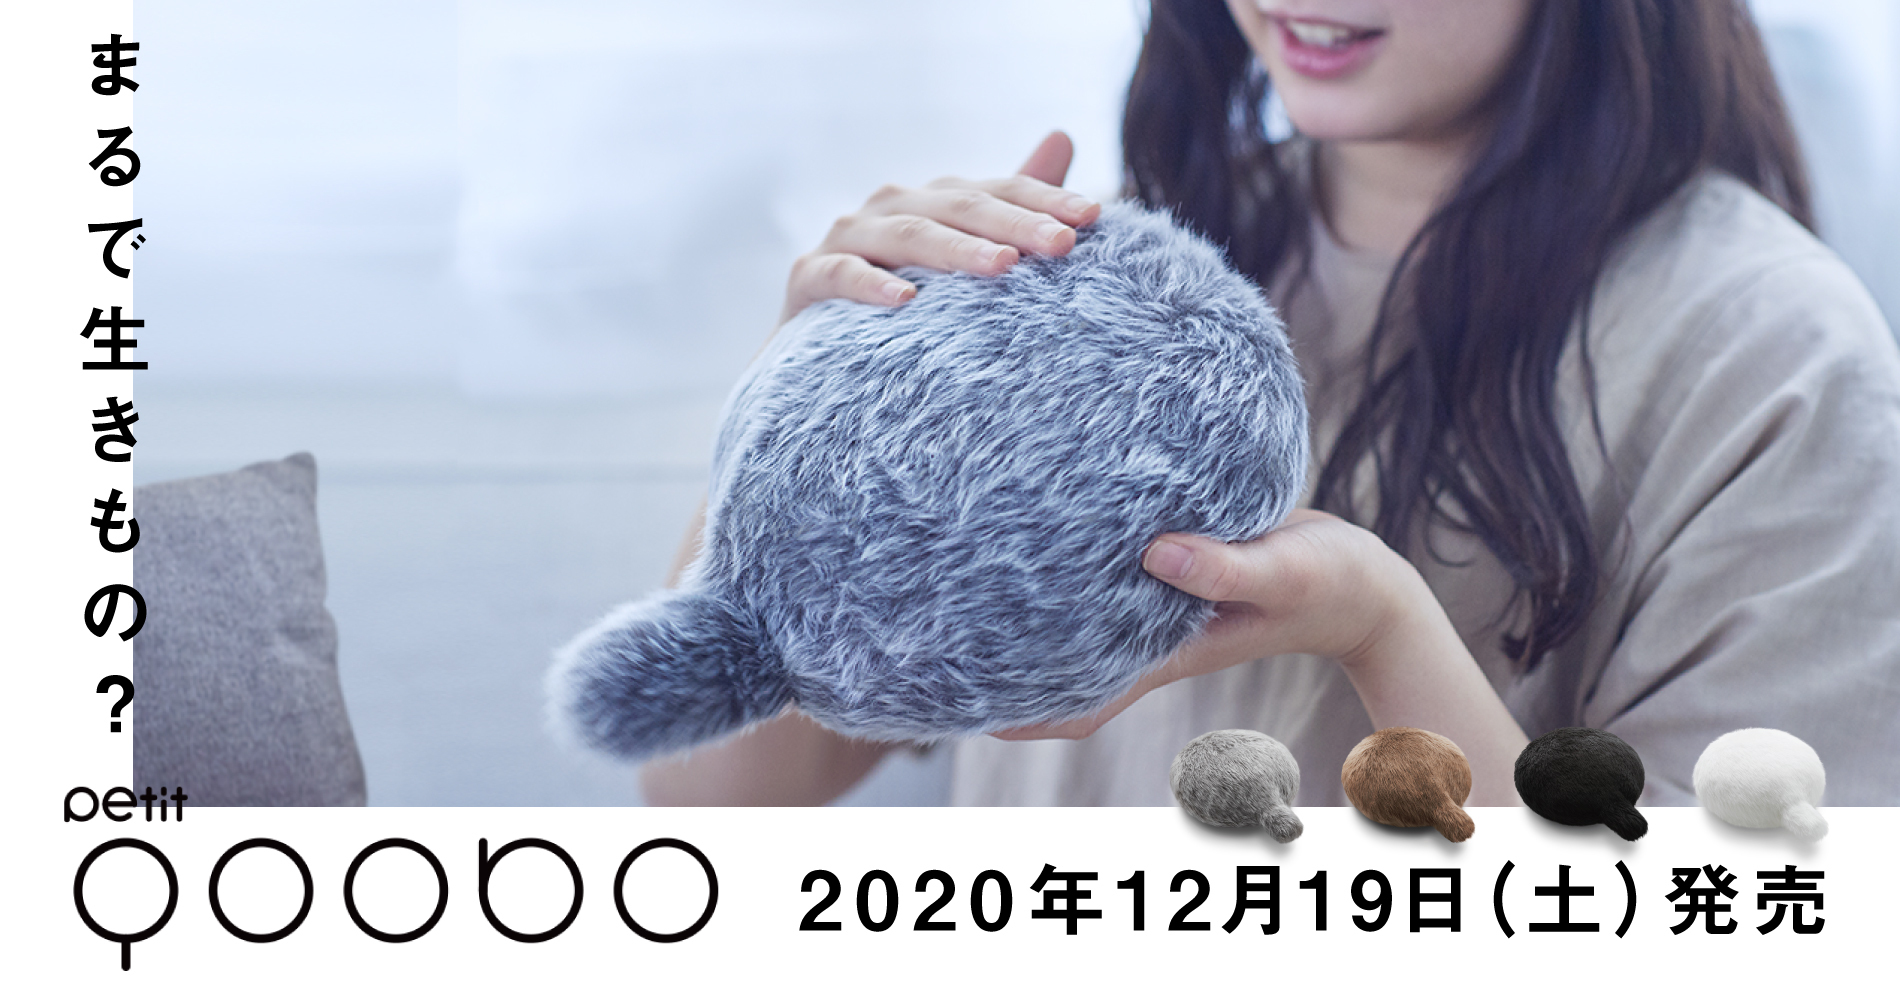 小さなしっぽロボット「Petit Qoobo」、2020年12月19日(土)新発売